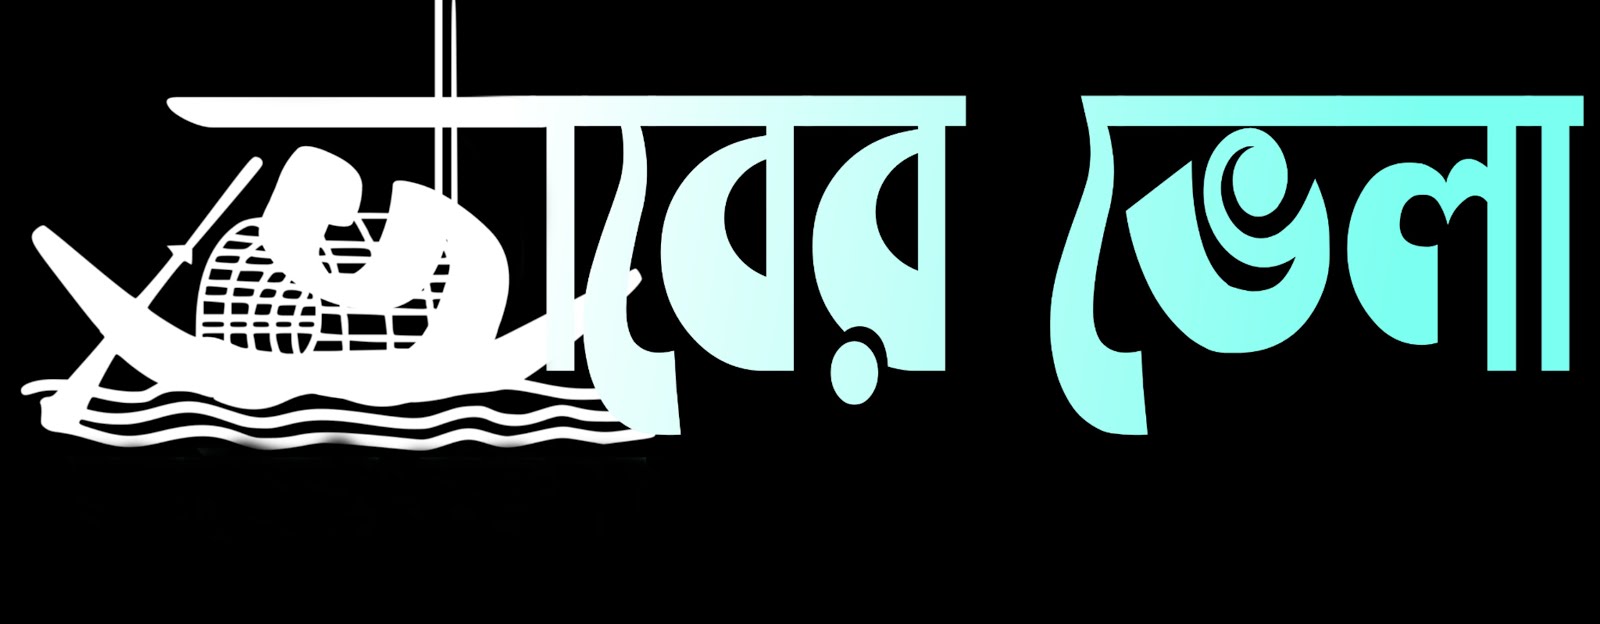 ভাবের ভেলা -বাংলা সাহিত্য কবিতা গল্পের আসর ( vaber vela-bangla kobita golpo literature)